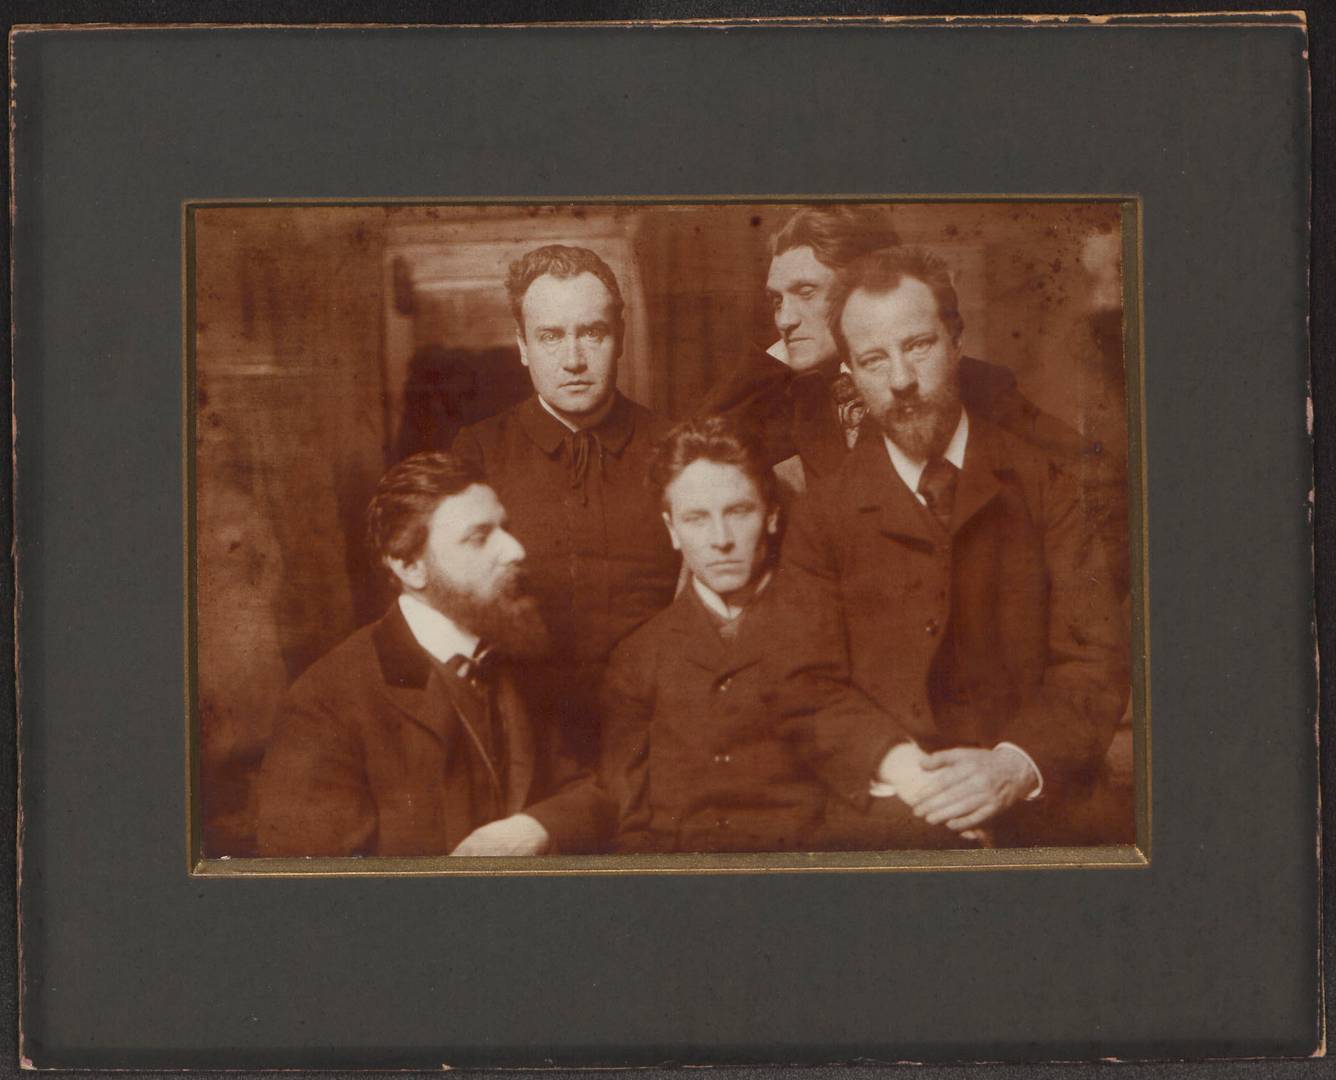 Альфред Шулер (второй слева) и Людвиг Клагес (третий слева). 1902